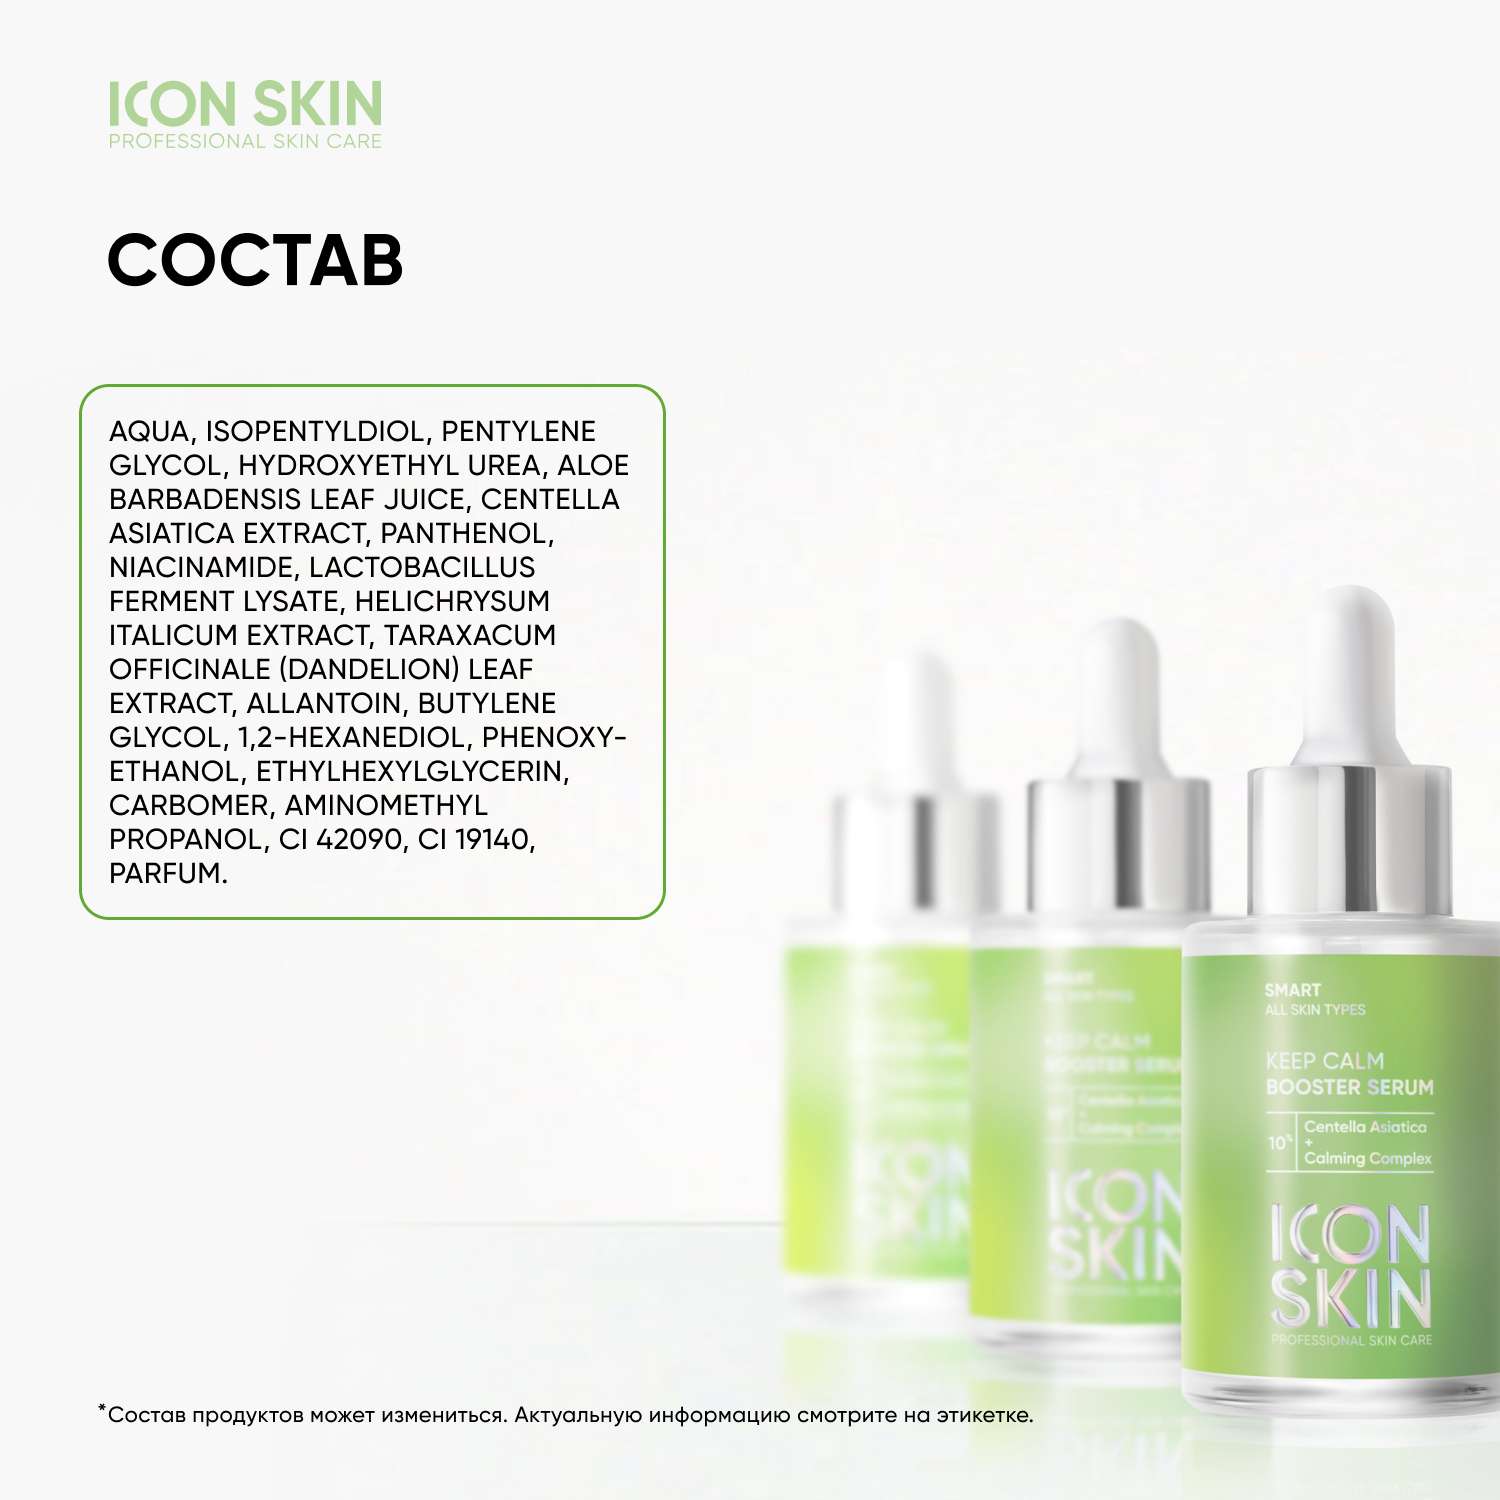 Успокаивающая сыворотка ICON SKIN Keep Calm с экстрактом центеллы азиатской - фото 7